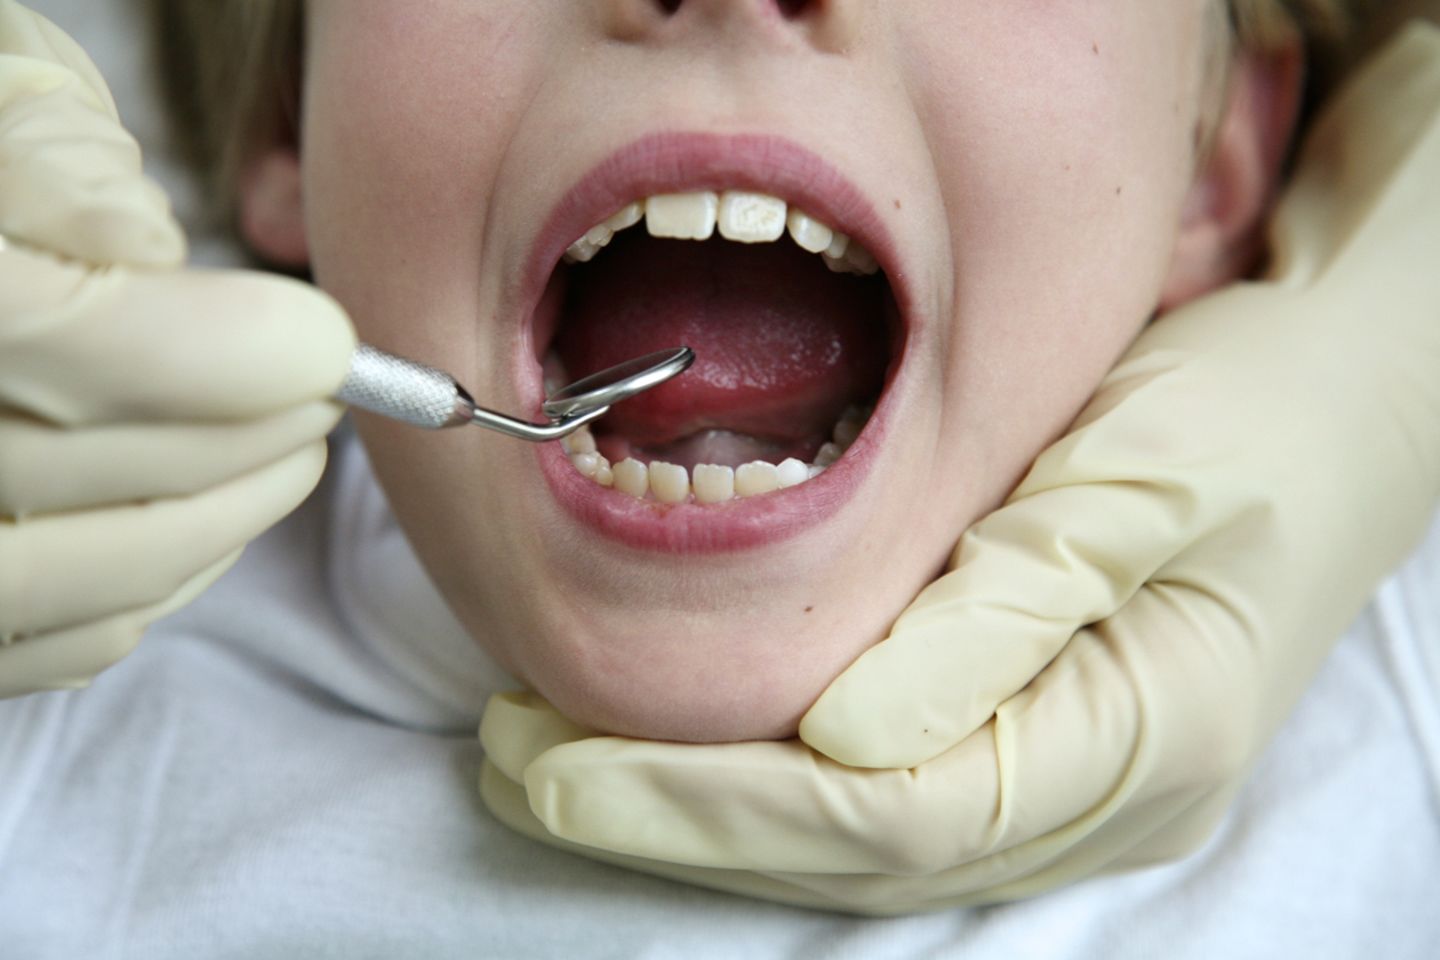 Beliebte Zusatzleistung beim Zahnarzt: die profesionelle Zahnreinigung. Nutzen: unklar.